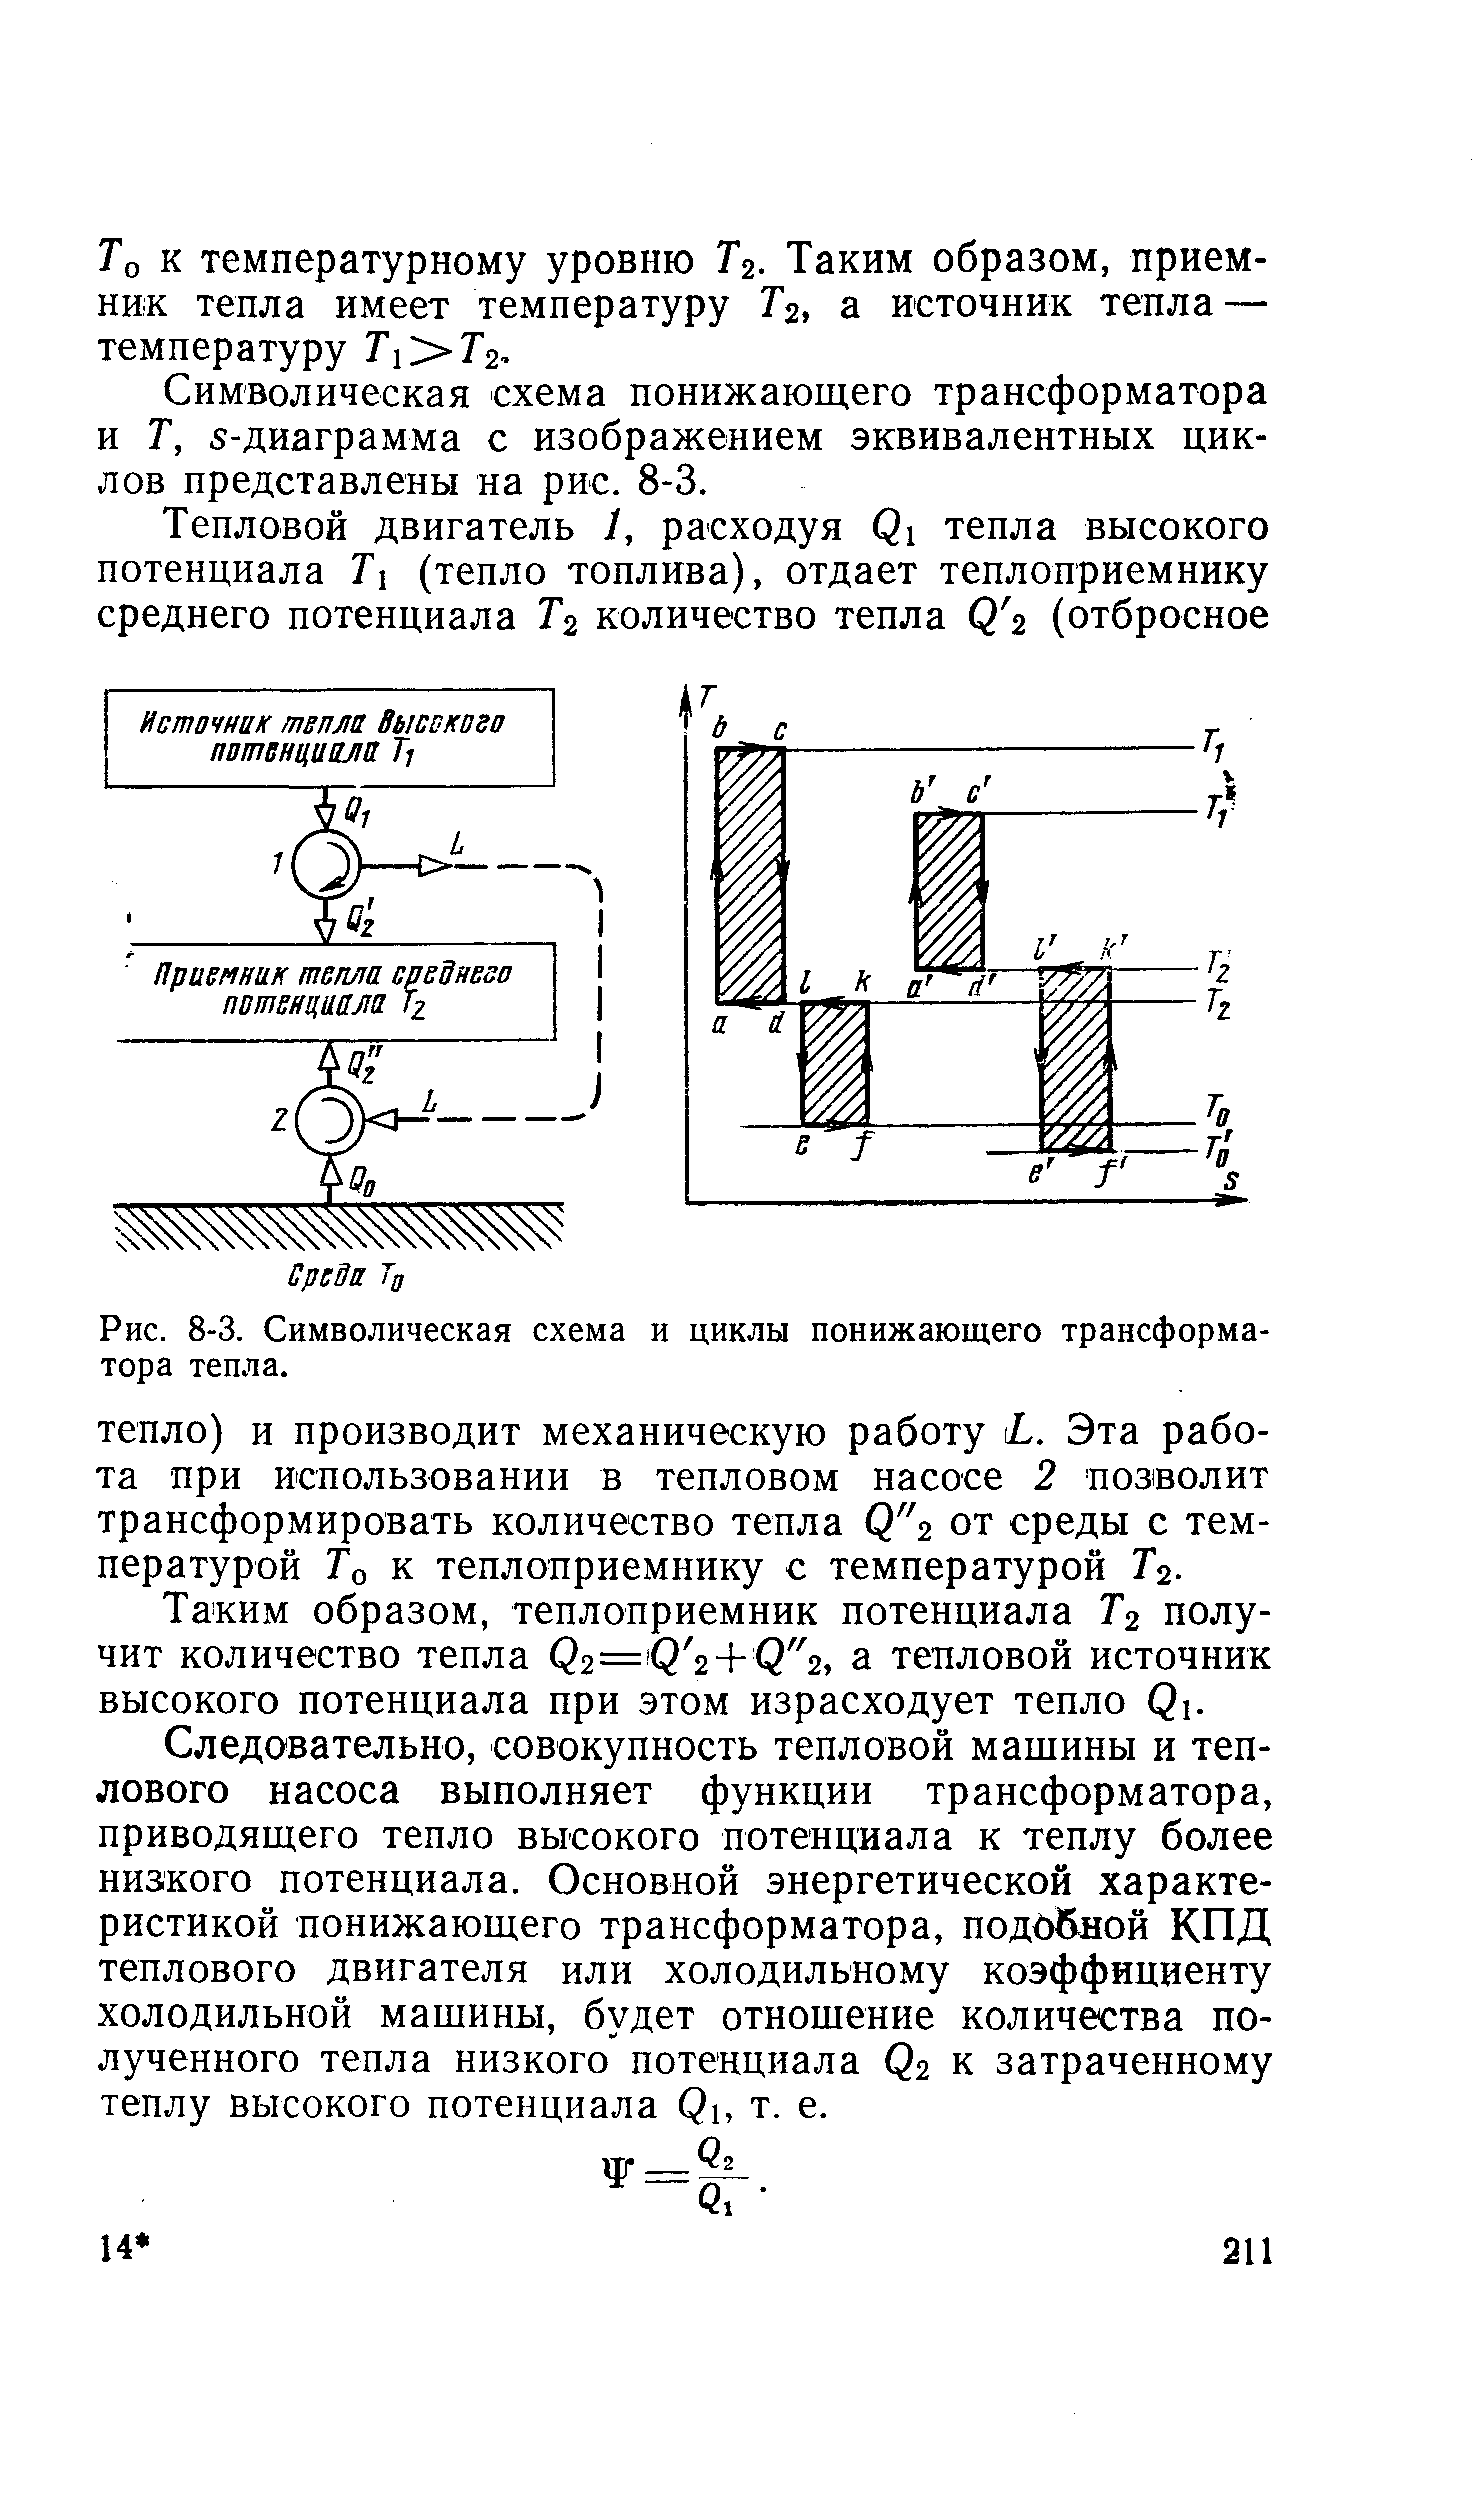 Рис. 8-3. Символическая схема и циклы понижающего трансформатора тепла.
